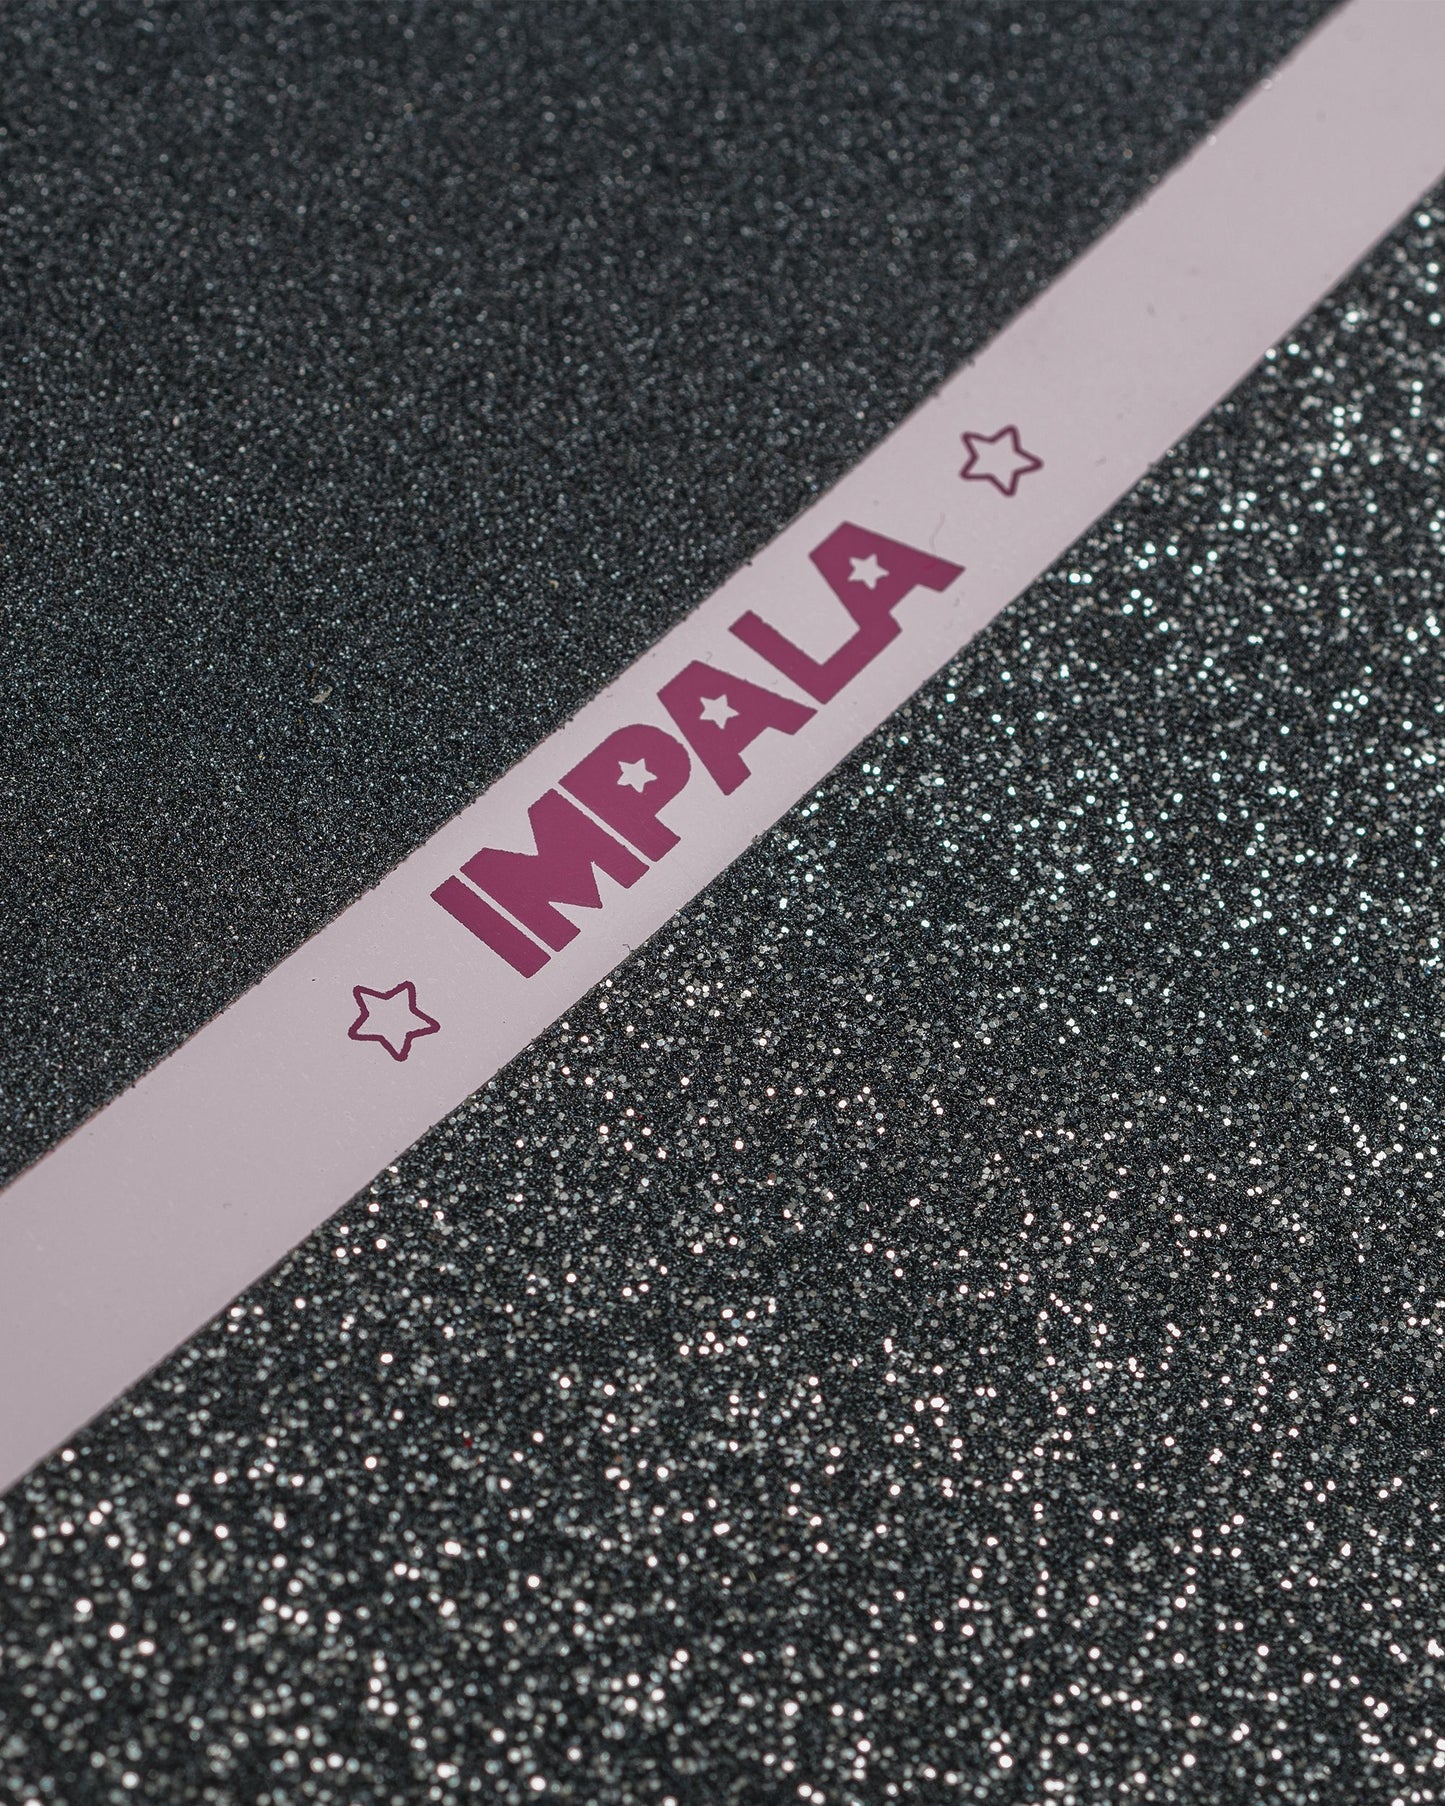 Grip tape detailing of Impala Cosmos Skateboard - Pink